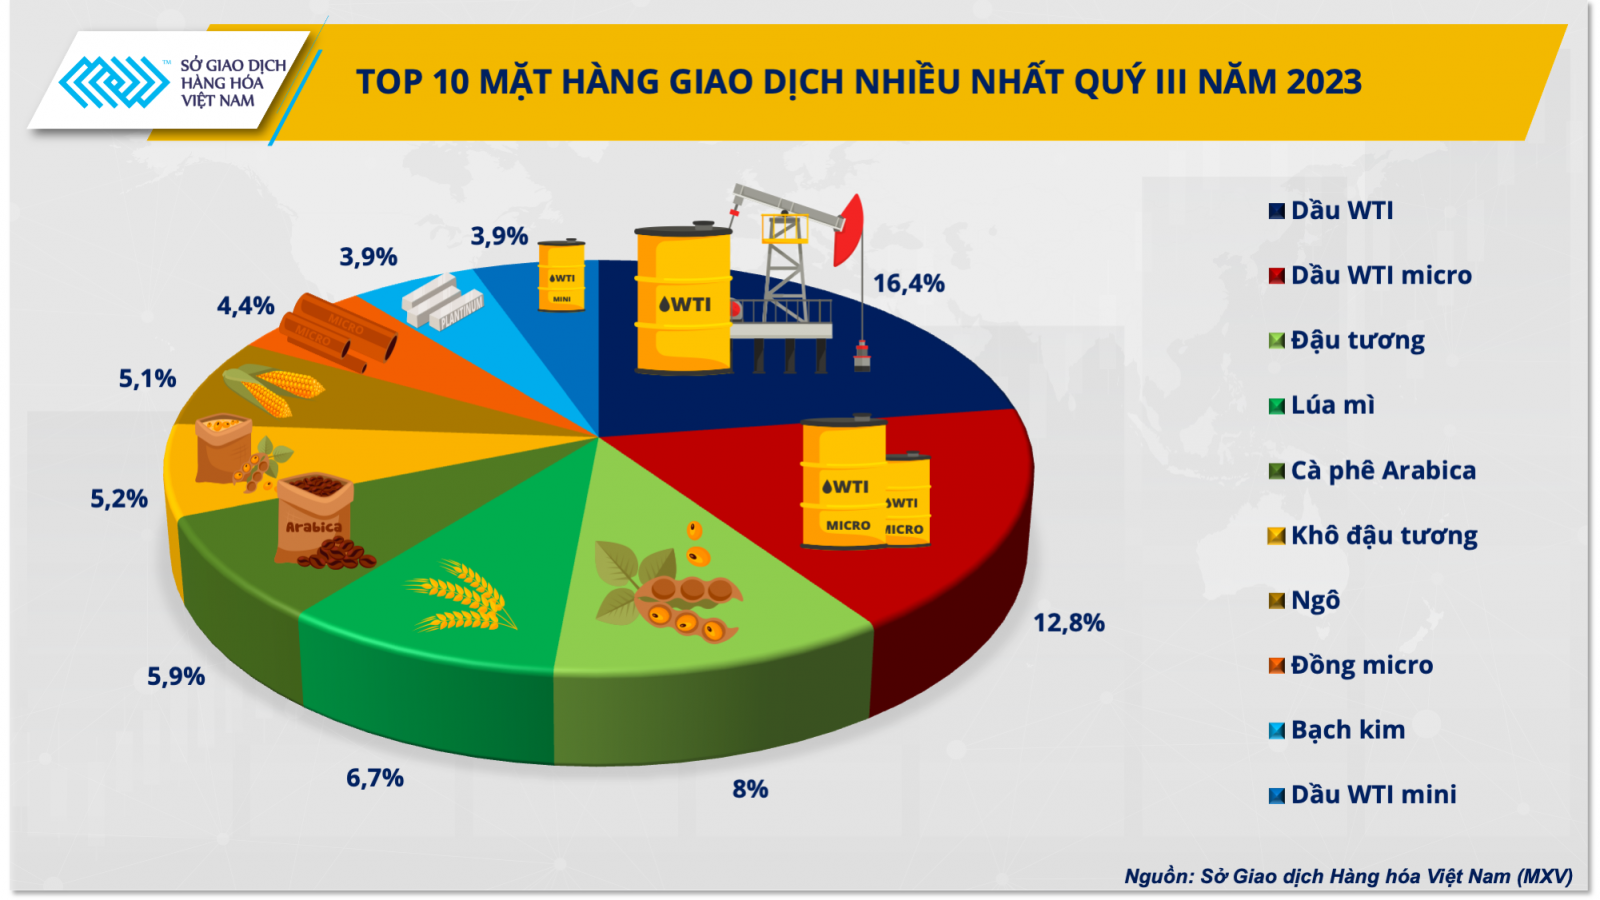 Các sản phẩm được giao dịch nhiều nhất tại Việt Nam trong quý III